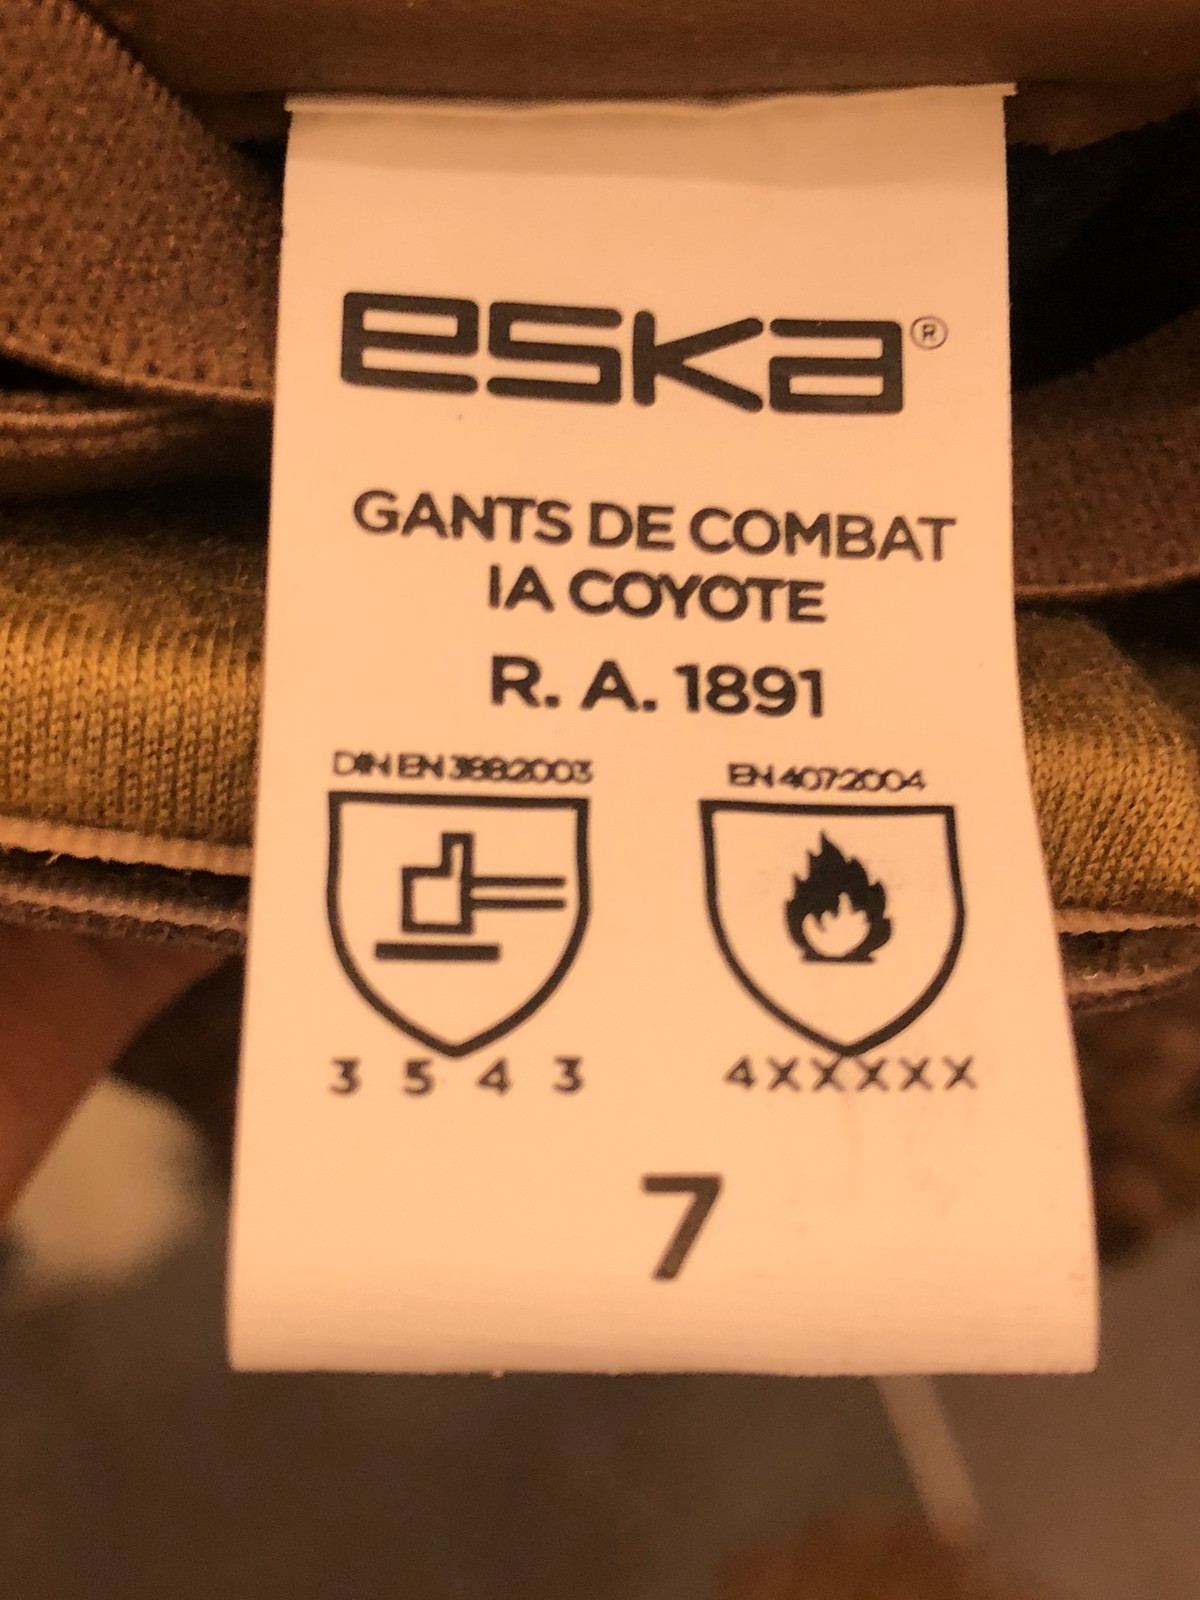 GANTS DE COMBAT coqués coyote armée française de marque ESKA en